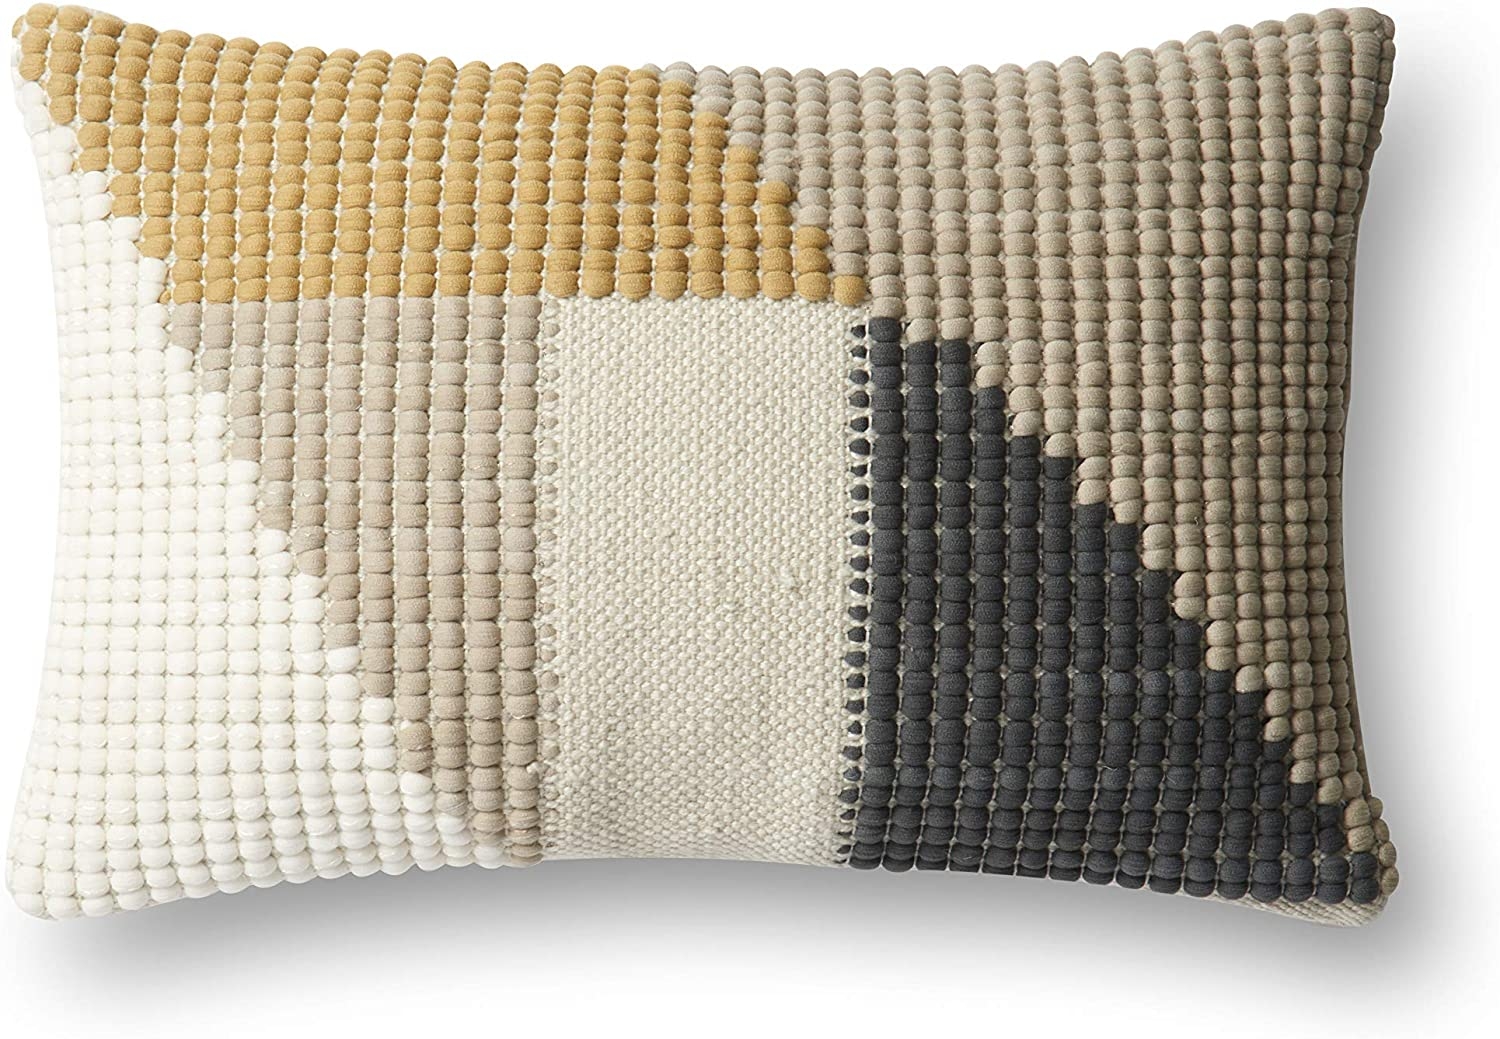 Striped Lumbar Throw Pillow Cover, 21" x 13" - Image 0